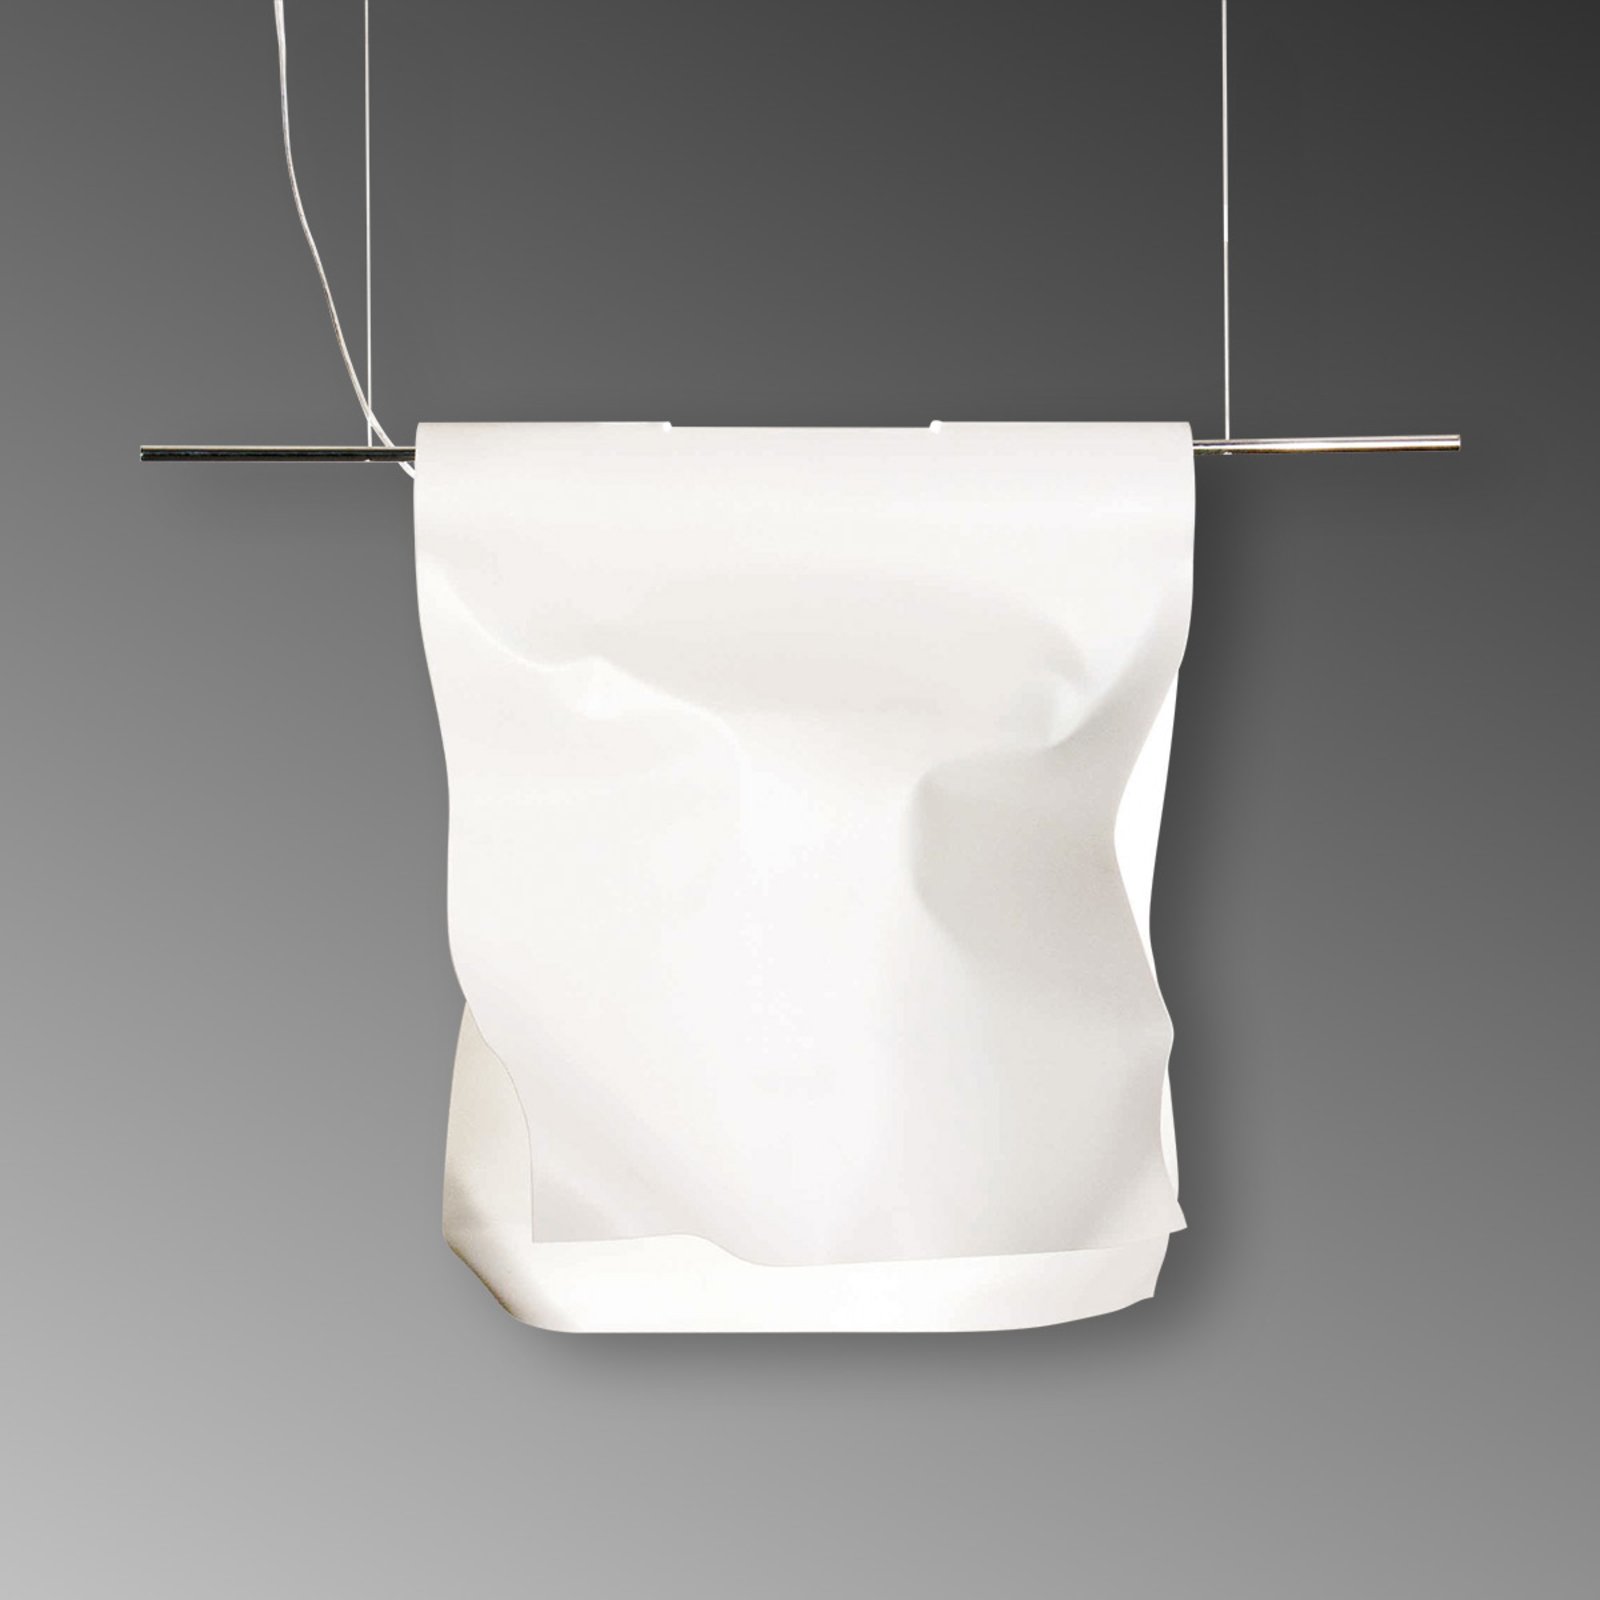 Knikerboker Stendimi - függő lámpa, 40 cm-es fehér